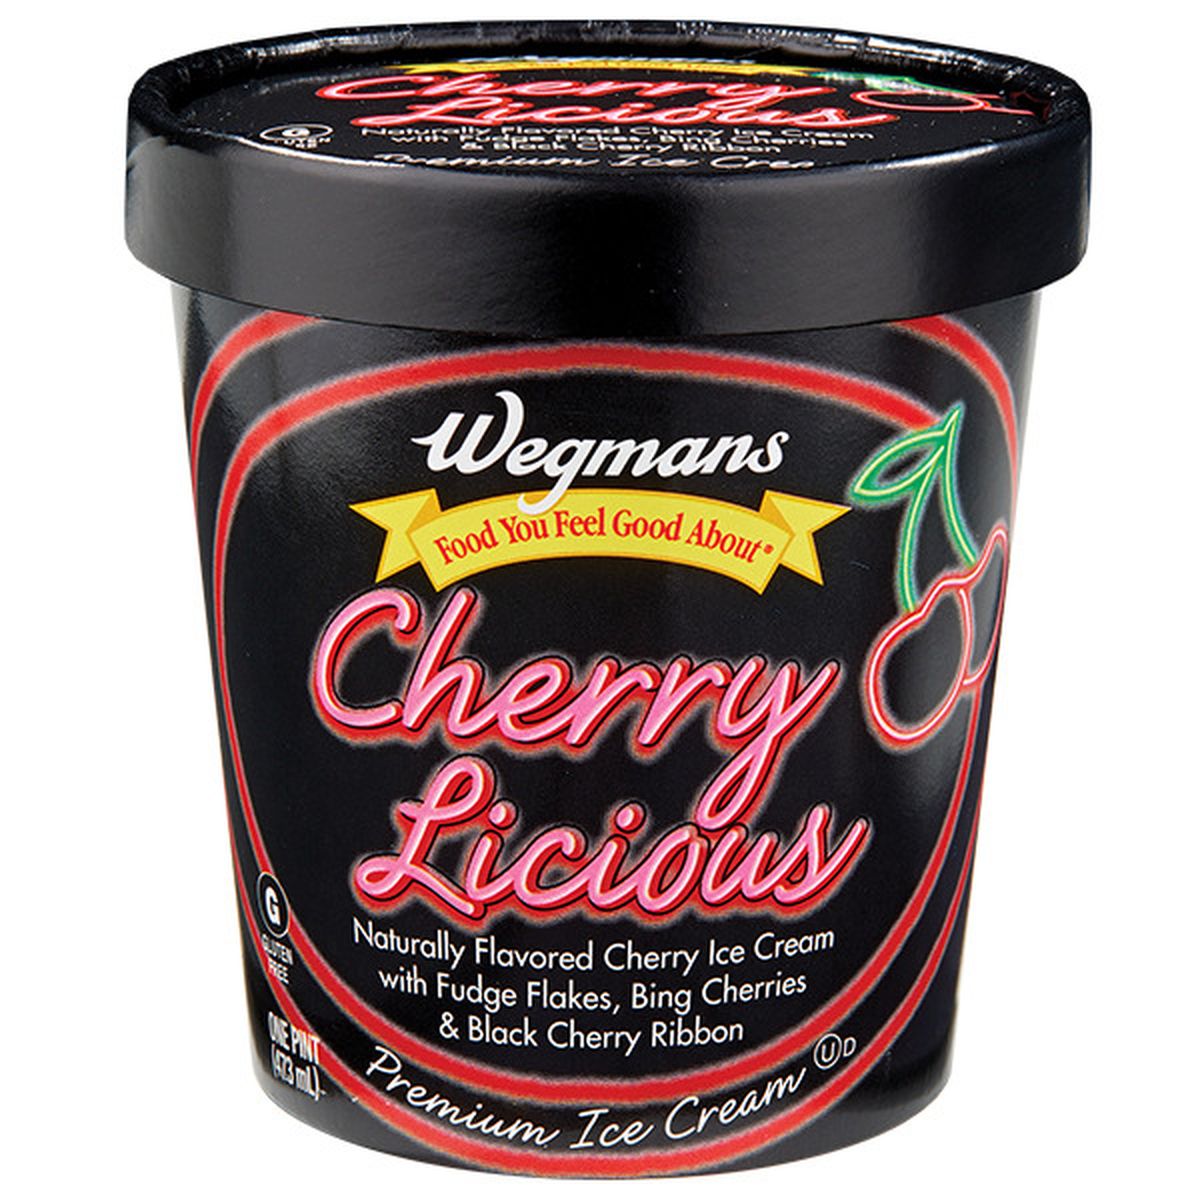 Calories in Wegmans Cherry Licious Premium Ice Cream